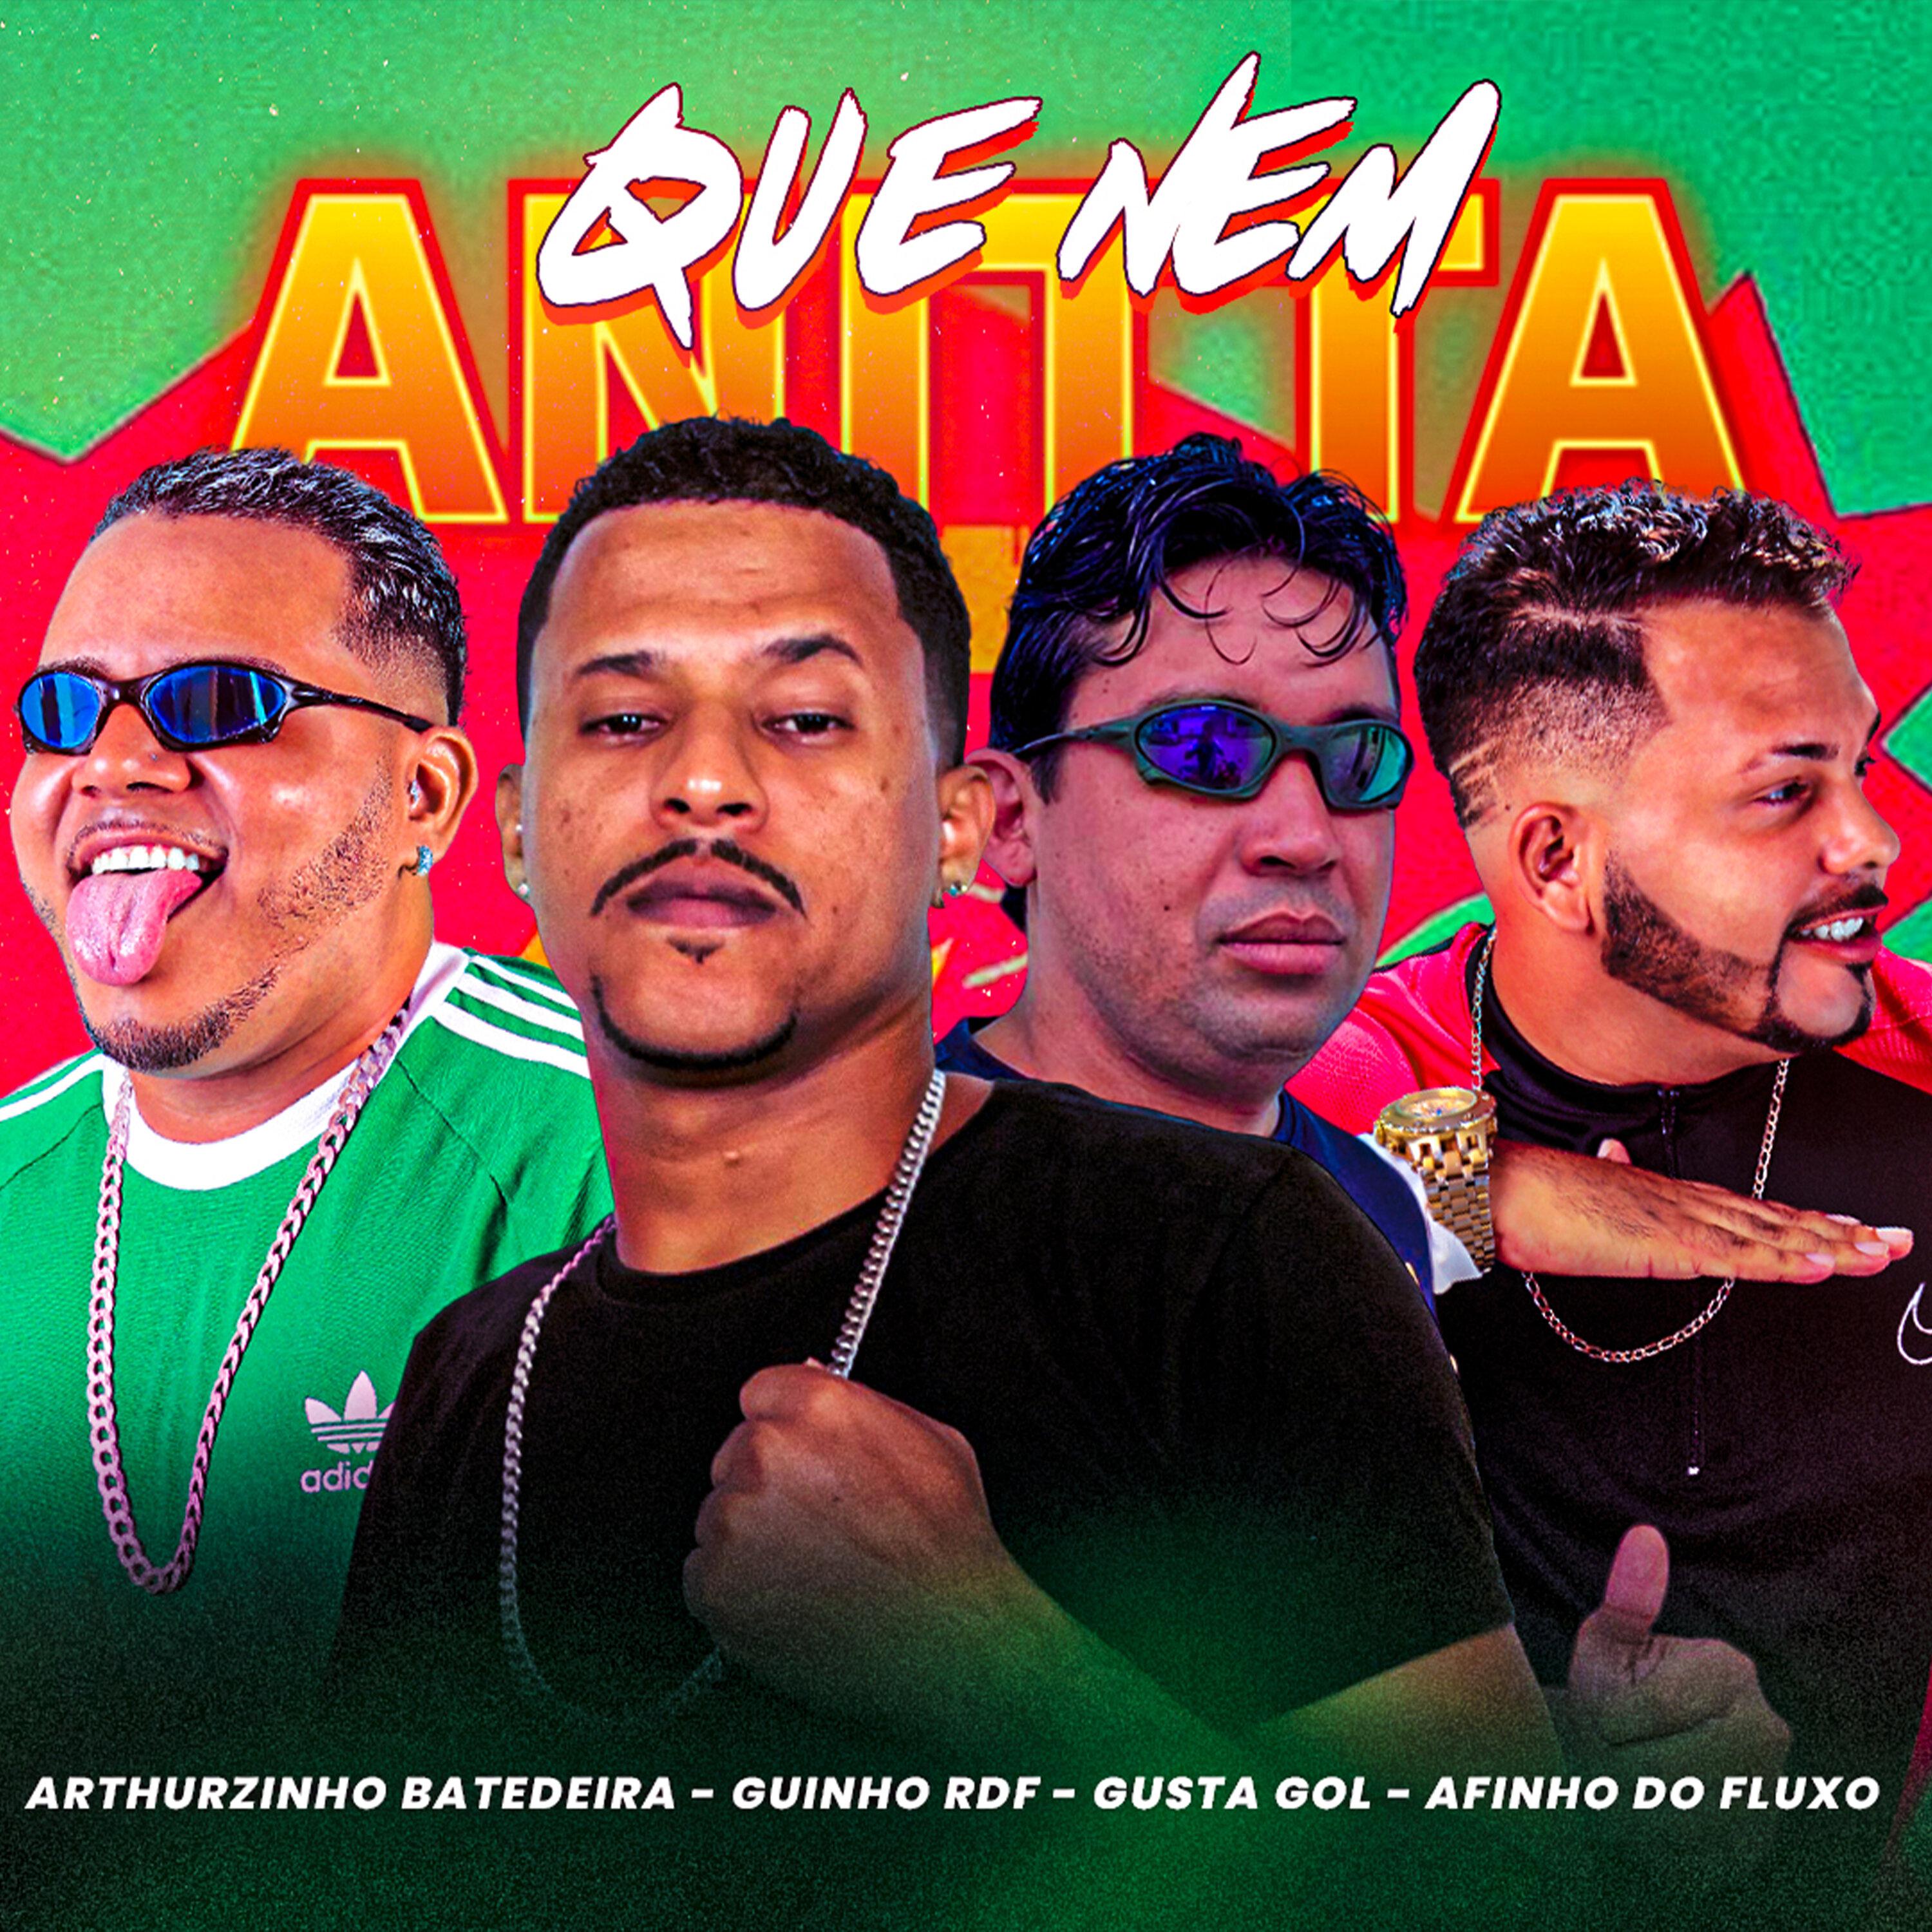 Arthurzinho Batedeira - Que Nem Anitta (feat. Gusta Gol)